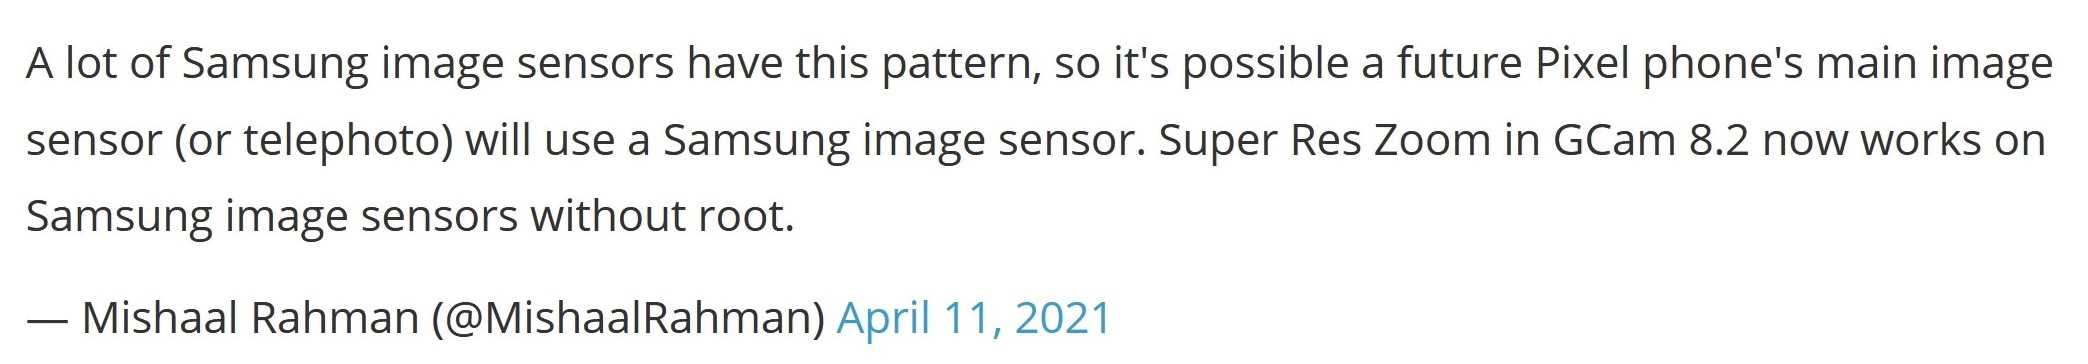 دوربین گوگل پیکسل بعدی ممکن است با سنسور ساخت سامسونگ ارائه شود